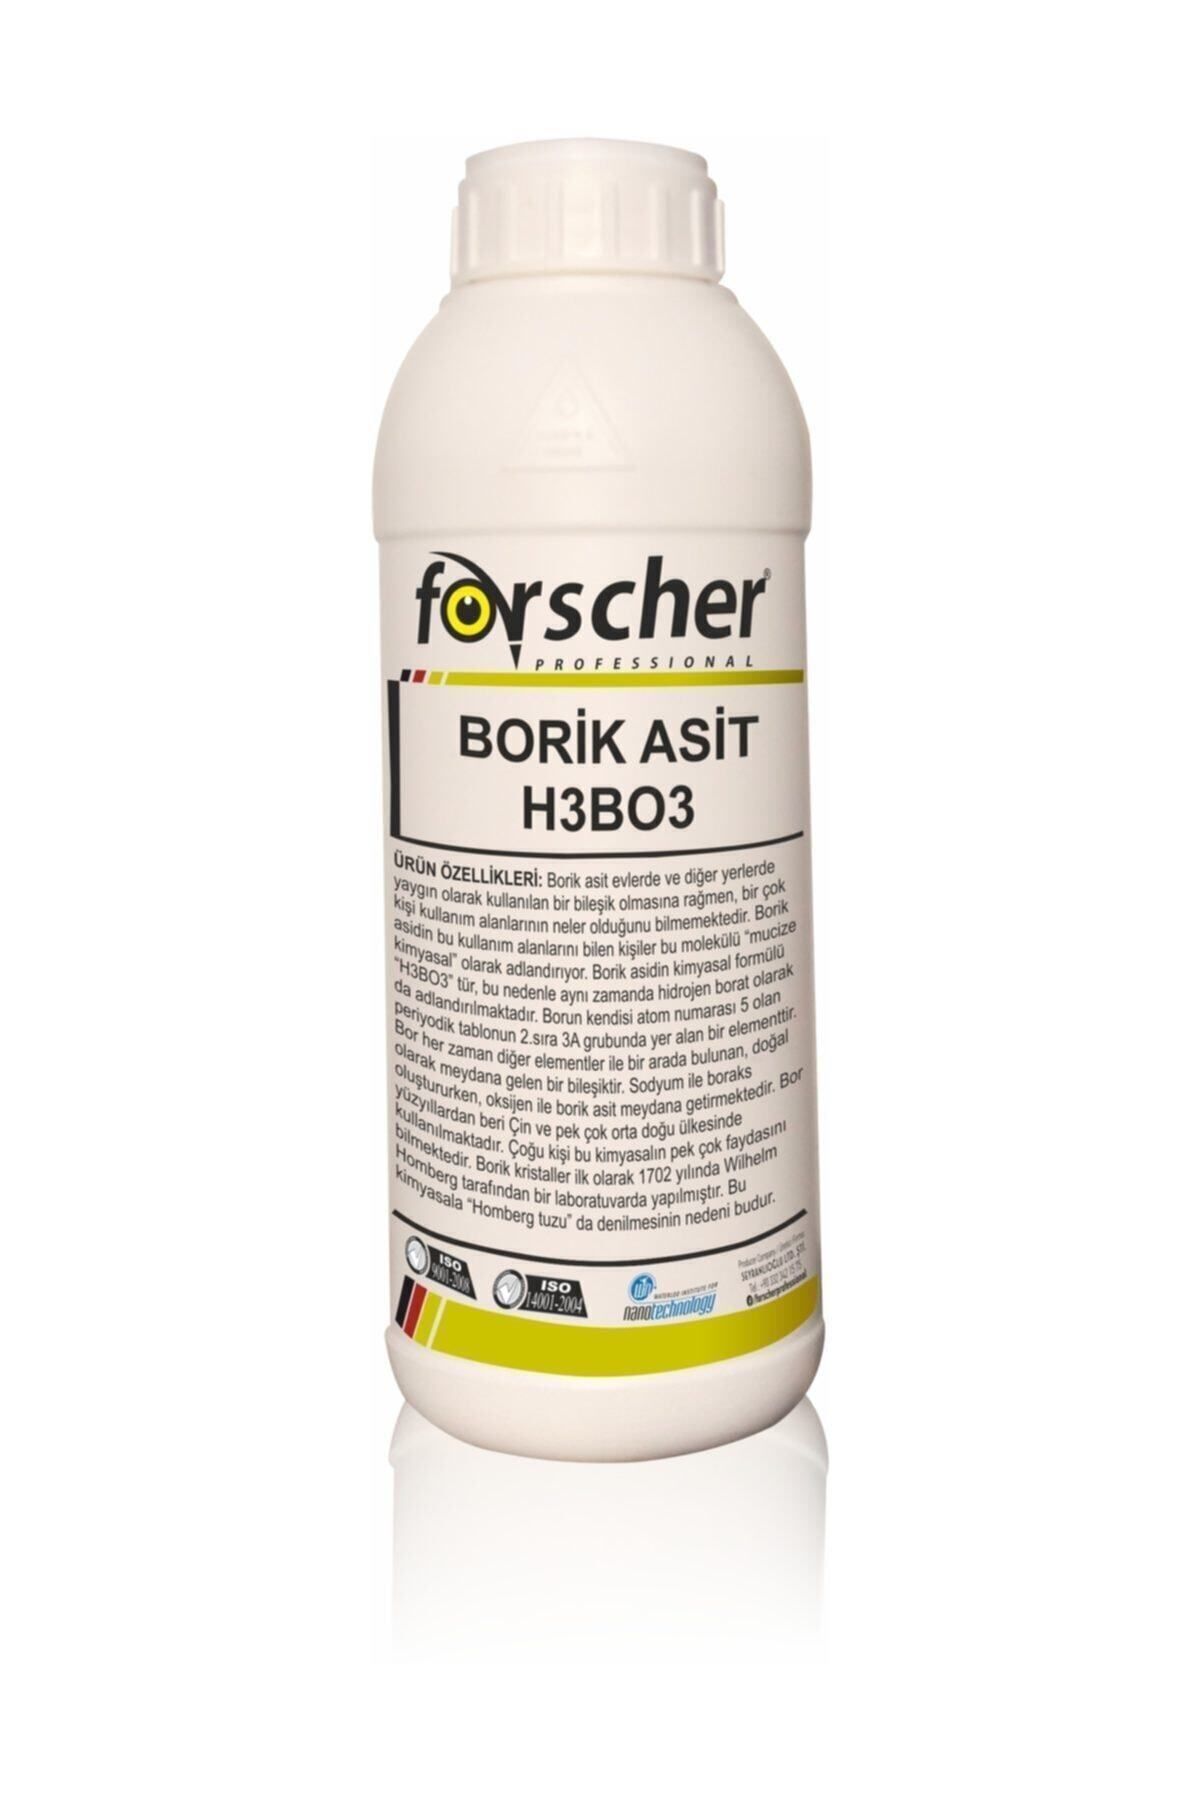 Forscher Borik Asit Technical Grade Powder 1 Kg